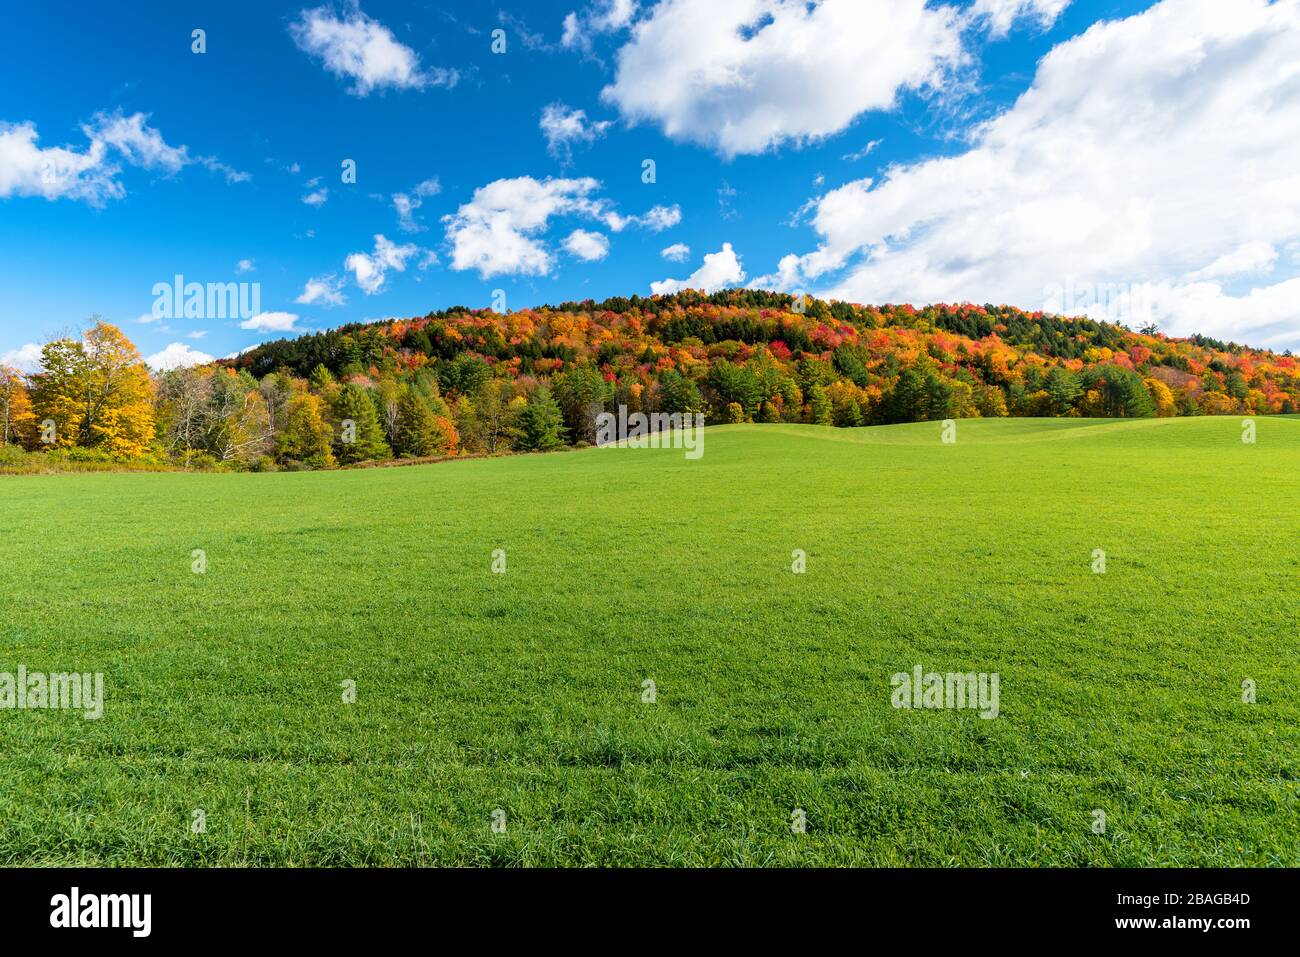 Wiese am Fuß eines Hügels, der von Bäumen bedeckt ist, auf dem Gipfel von Herbstlaub und blauem Himmel Stockfoto